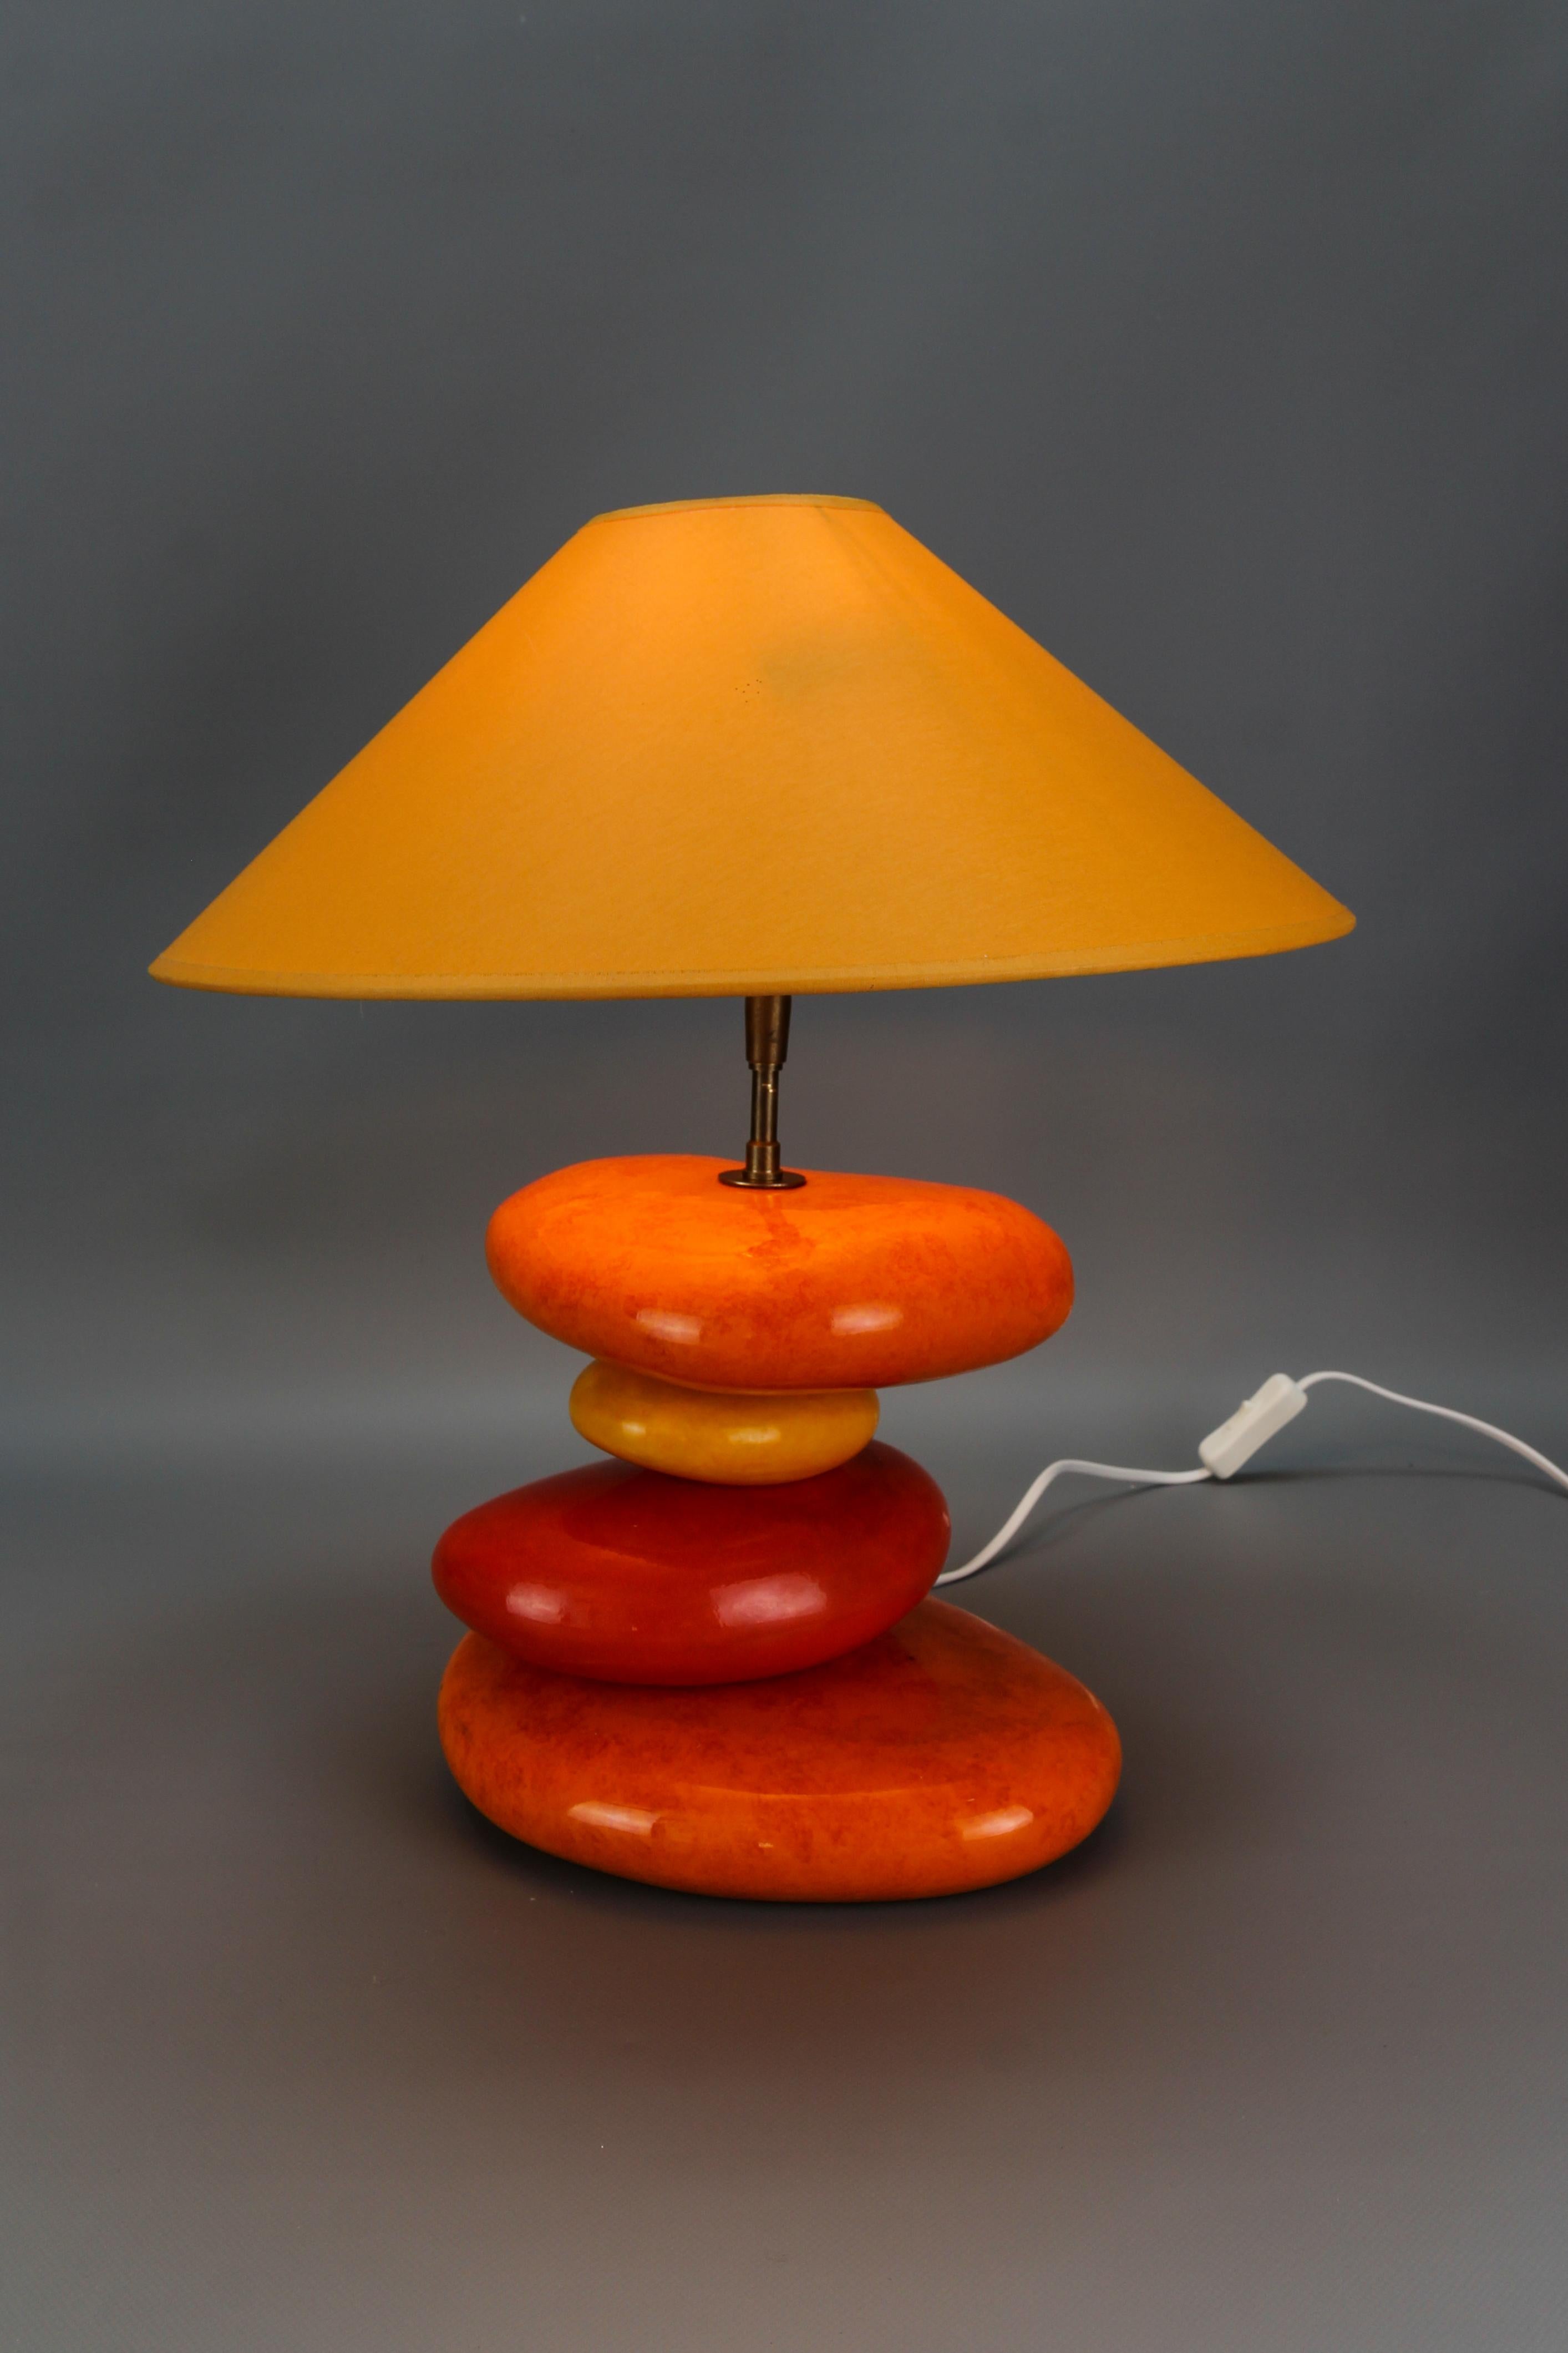 Französische, gelb und orange glasierte Keramik-Tischlampe von François Châtain aus dem späten 20.
Diese farbenfrohe Tischleuchte hat einen beeindruckenden Lampenfuß - kieselsteinförmige, unregelmäßig gestapelte Kugeln aus Keramik, glasiert in